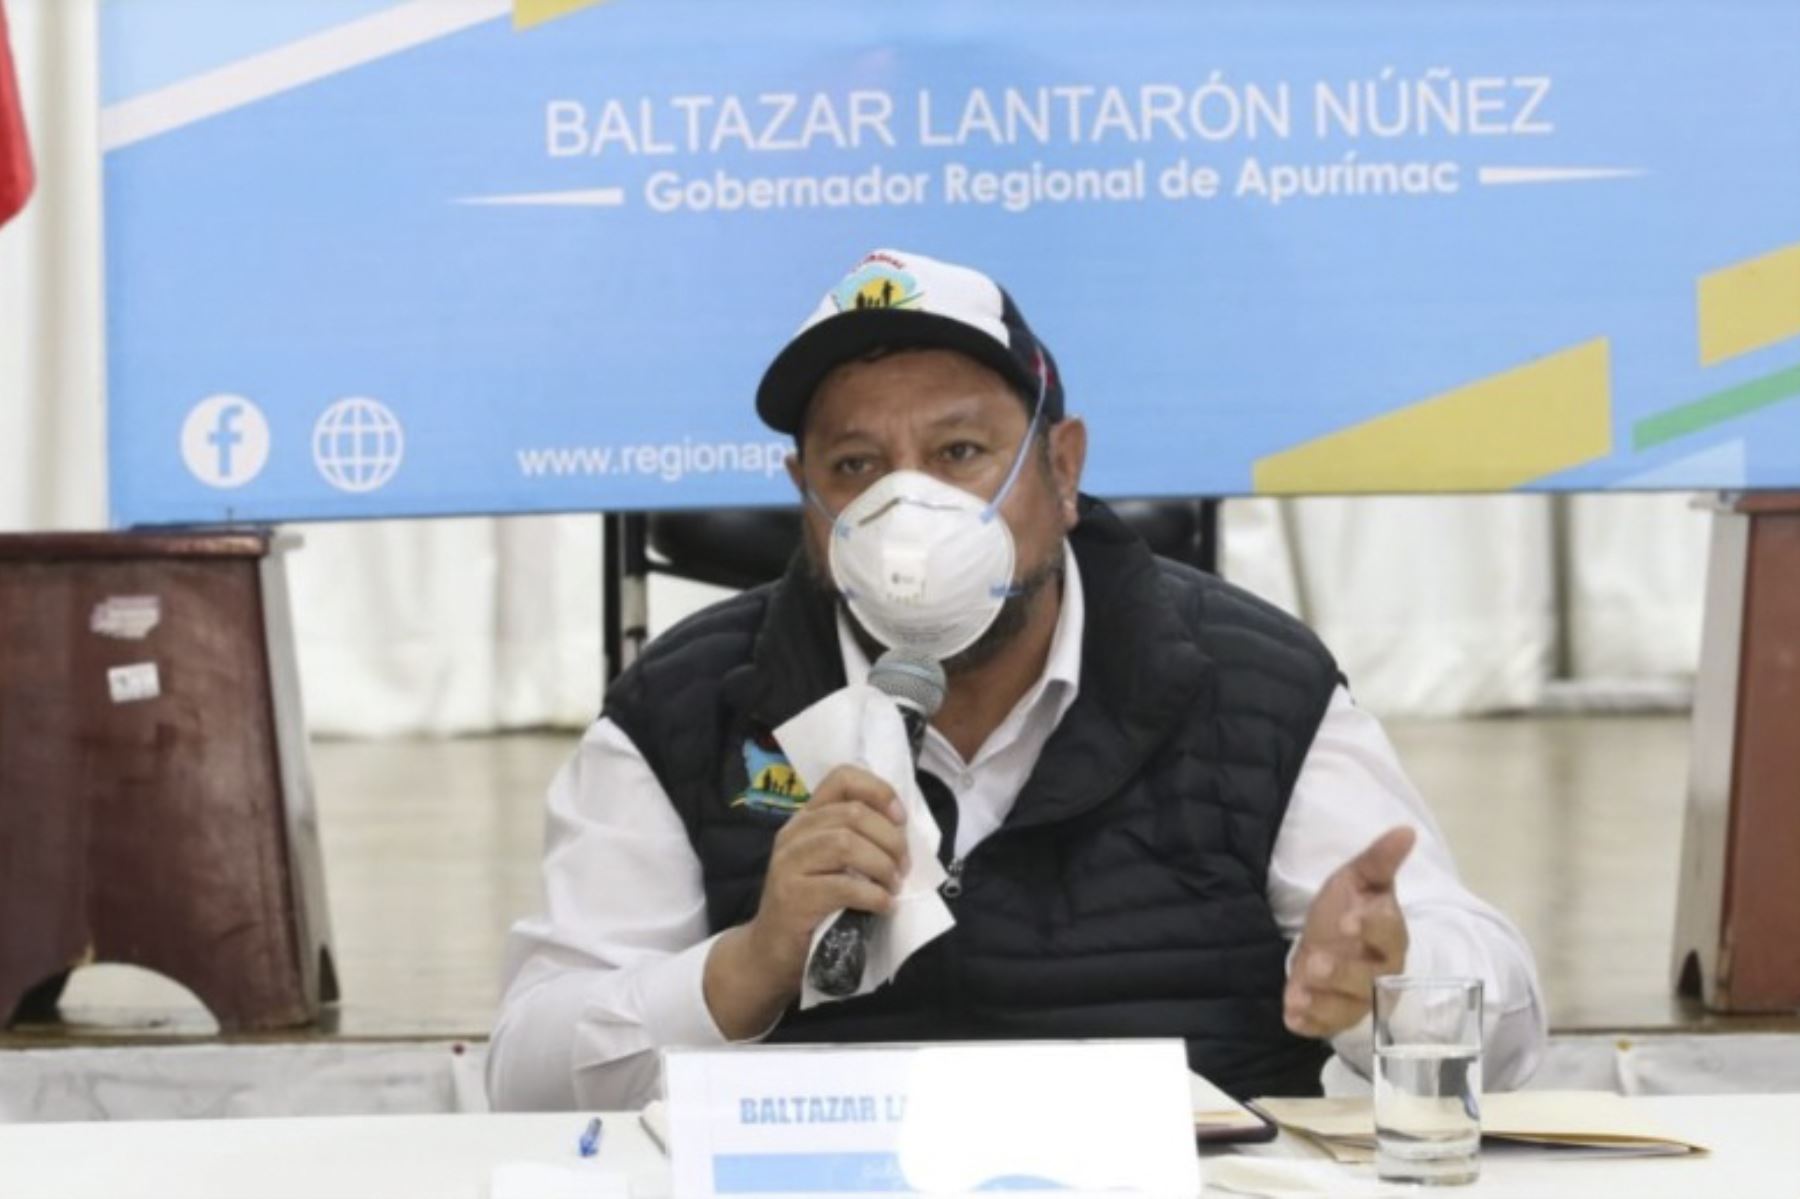 El gobernador regional de Apurímac, Baltazar Lantarón, expresó su temor en que haya un retroceso en la lucha contra el covid-19 y la reactivación económica. Foto: ANDINA/Difusión